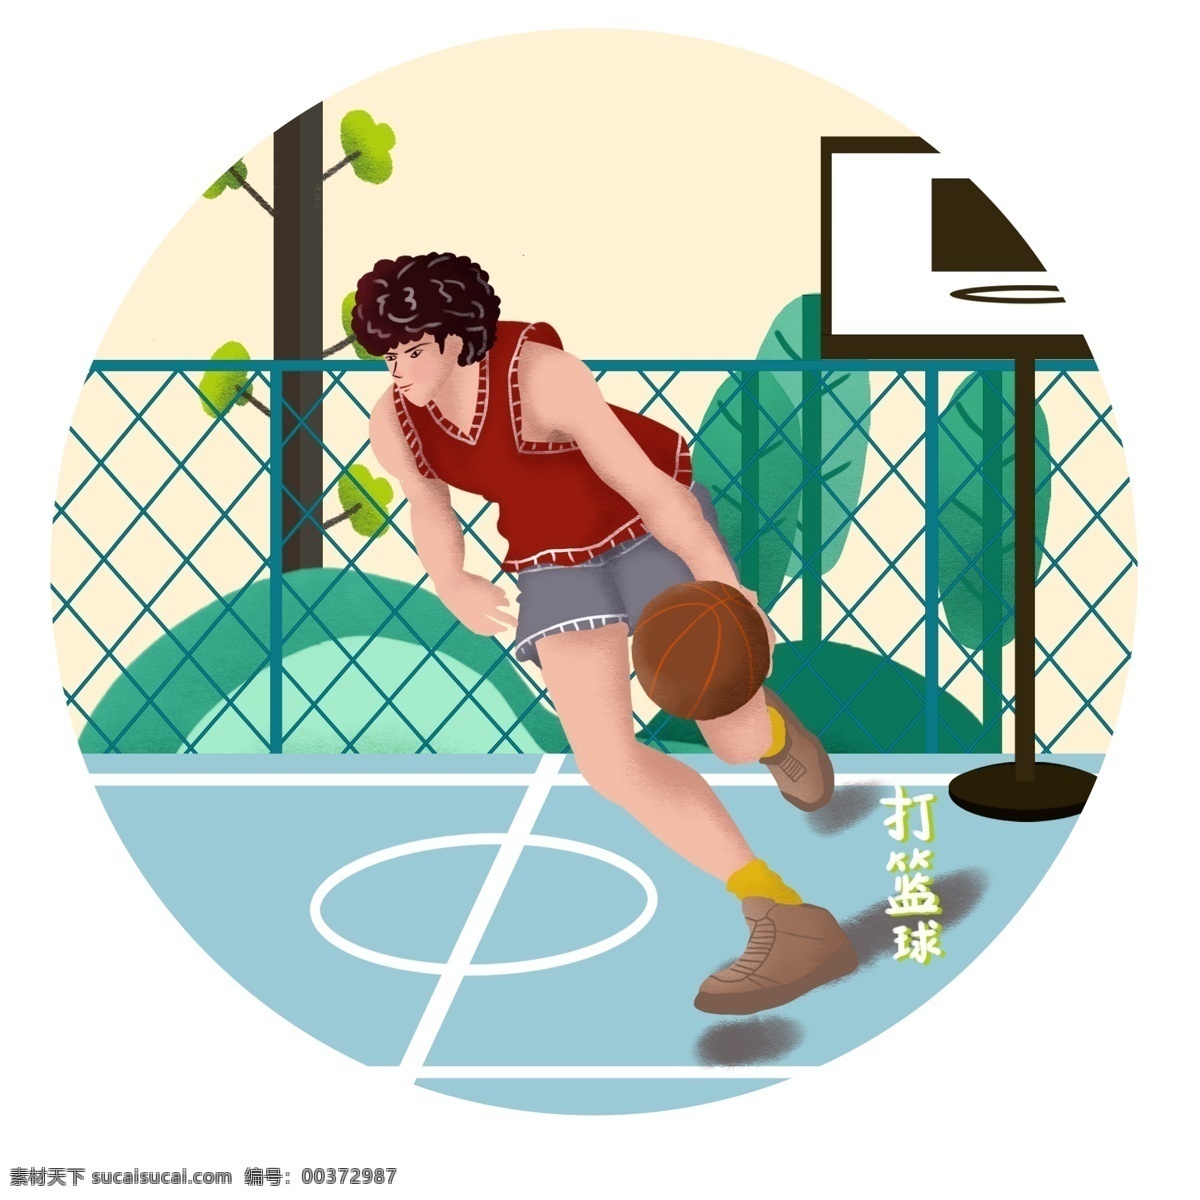 手绘 风 体育 日 操场 篮球 男孩 手绘风 体育日 人物 植物 数木 篮球架 元素 可商用